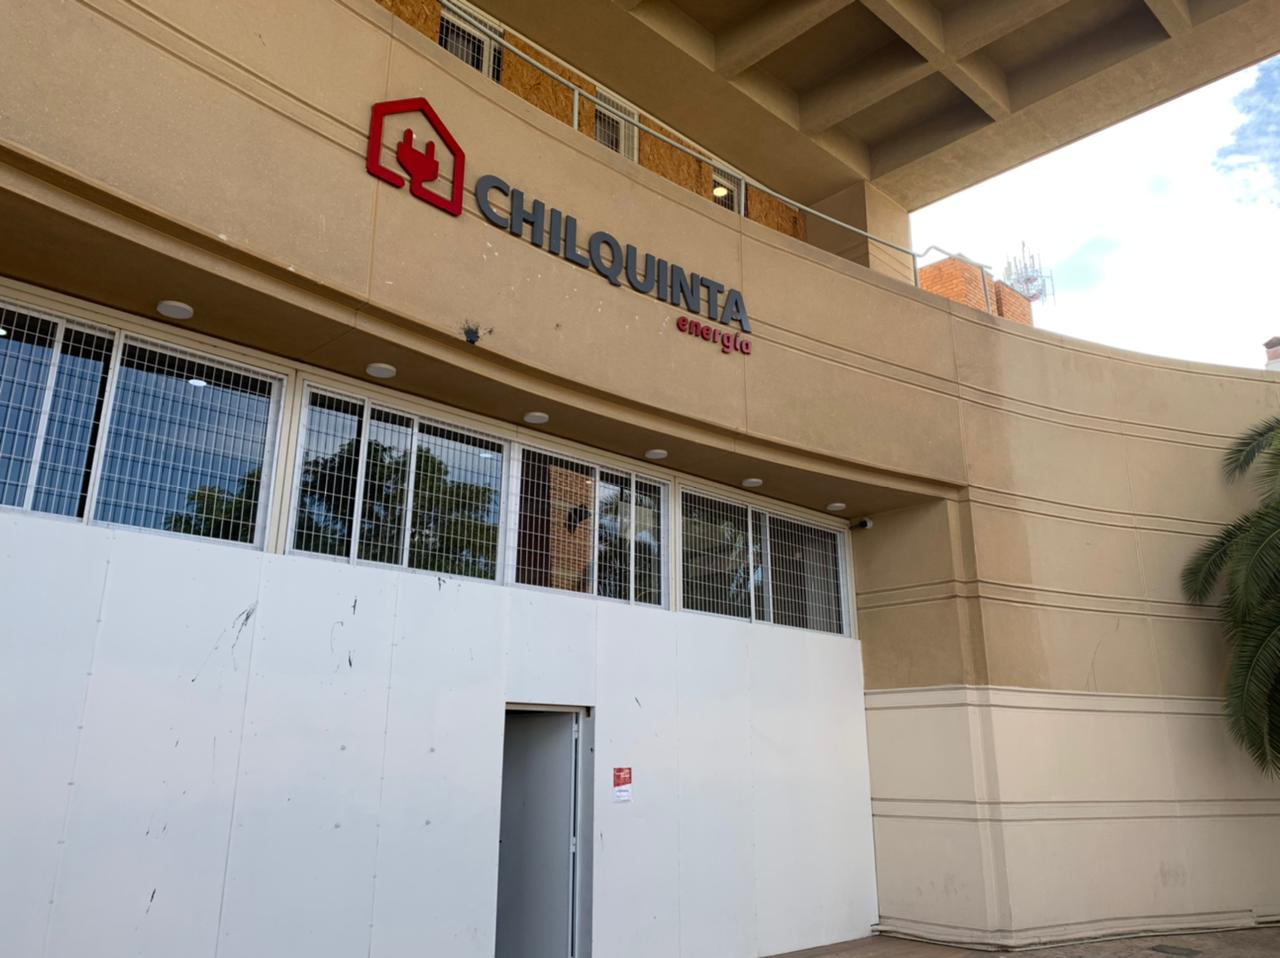 ACONCAGUA: Chilquinta Energía informa el cierre de sus Centros de Servicio en Los Andes y San Felipe por Cuarentena